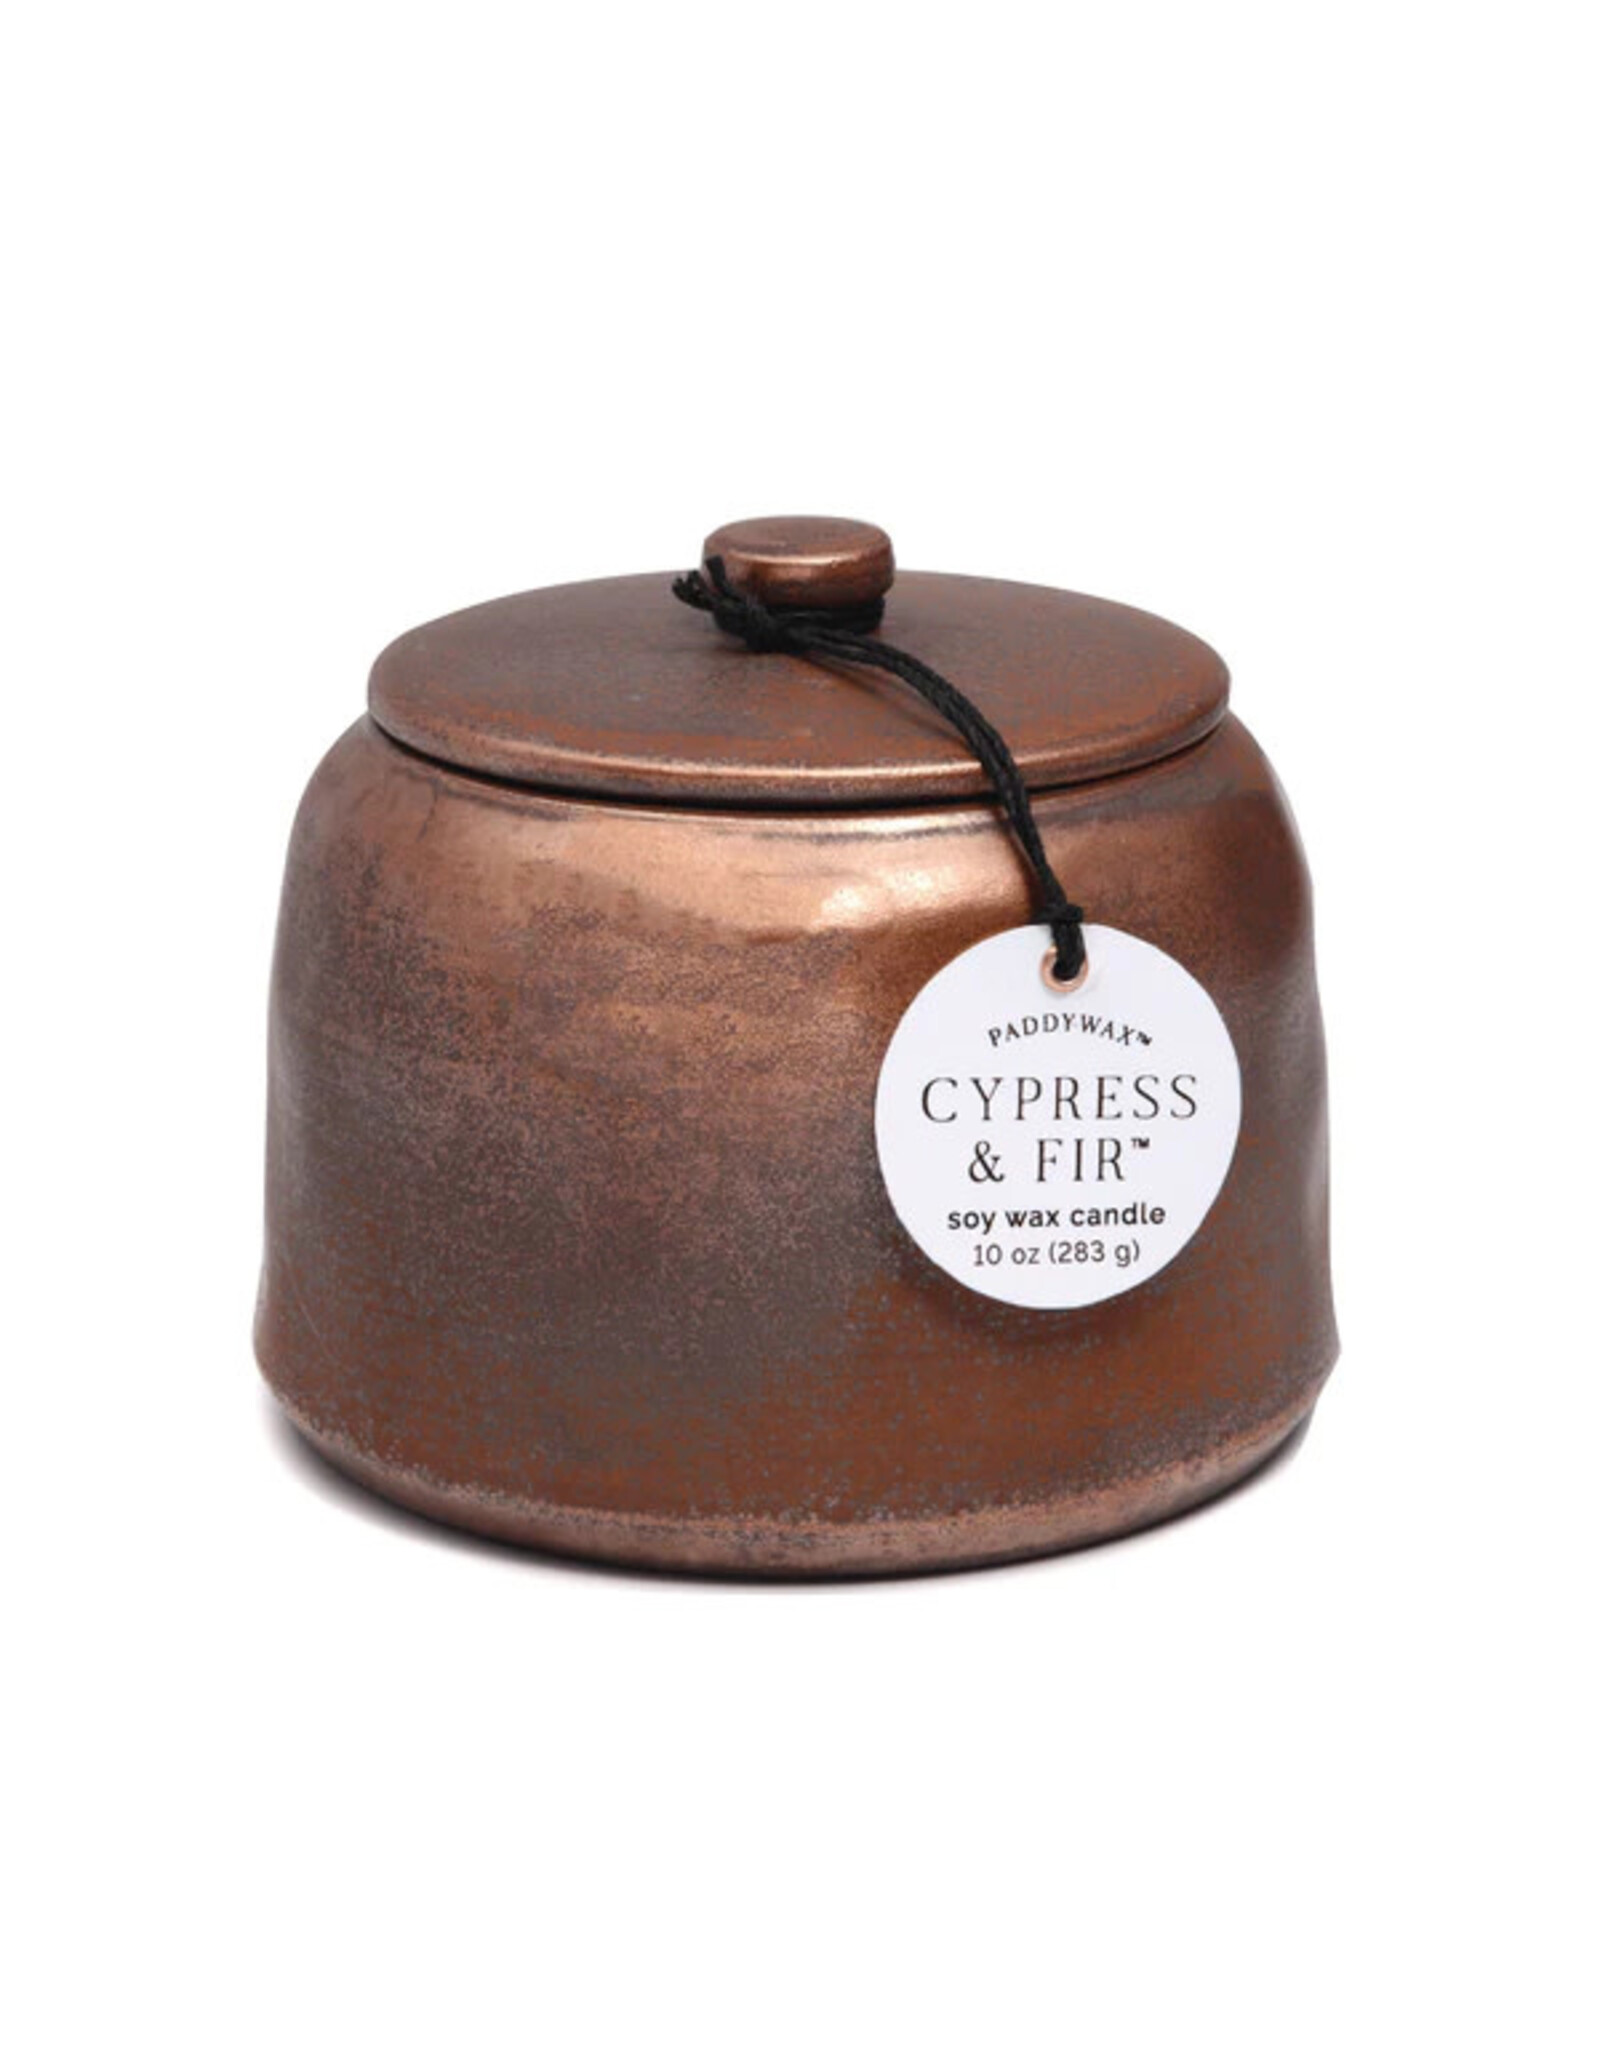 Paddywax Cypress & Fir Bronzed Ceramic Jar